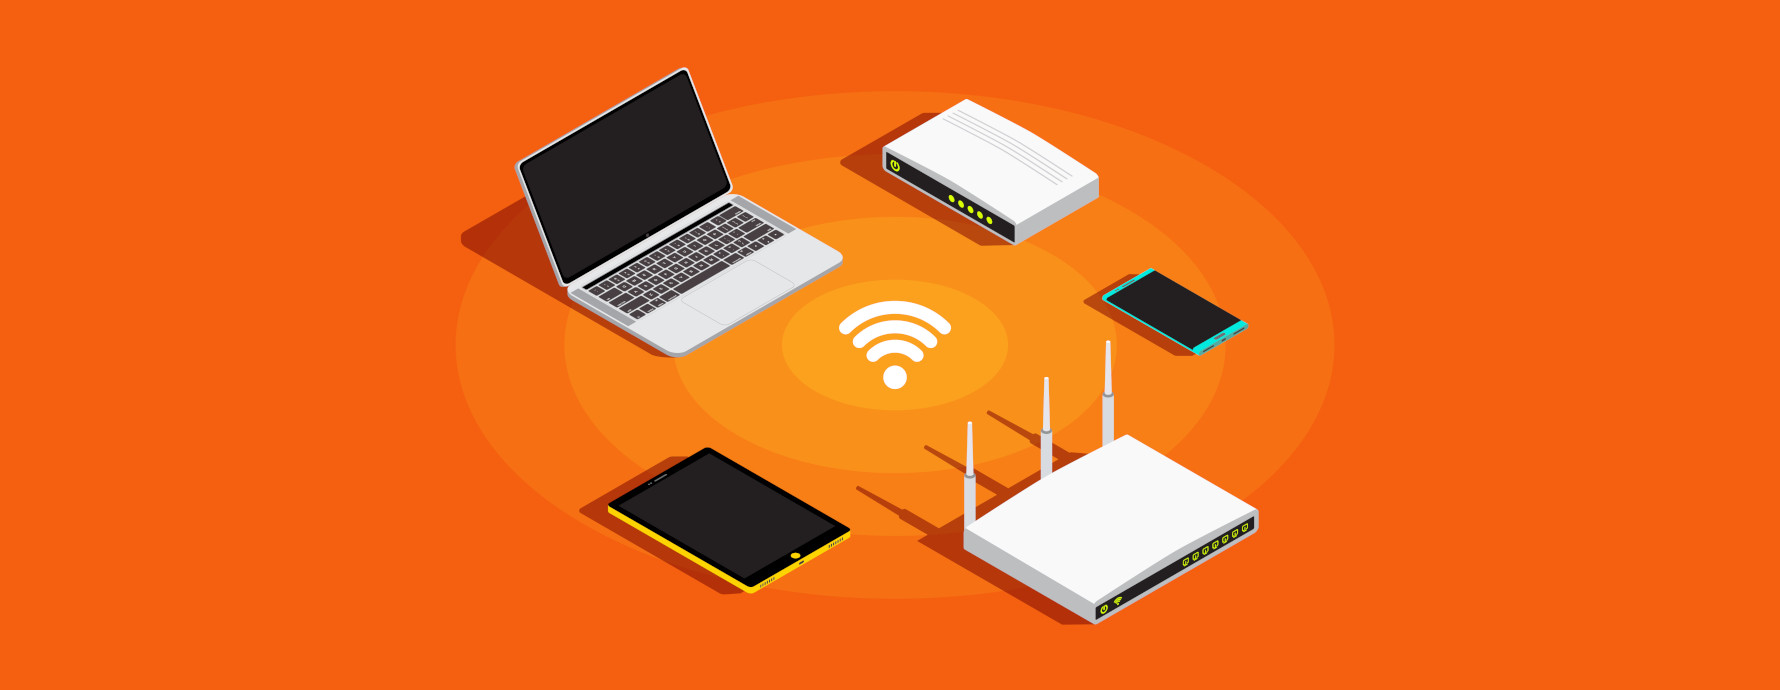 Vários dispositivos conectados ao WiFi